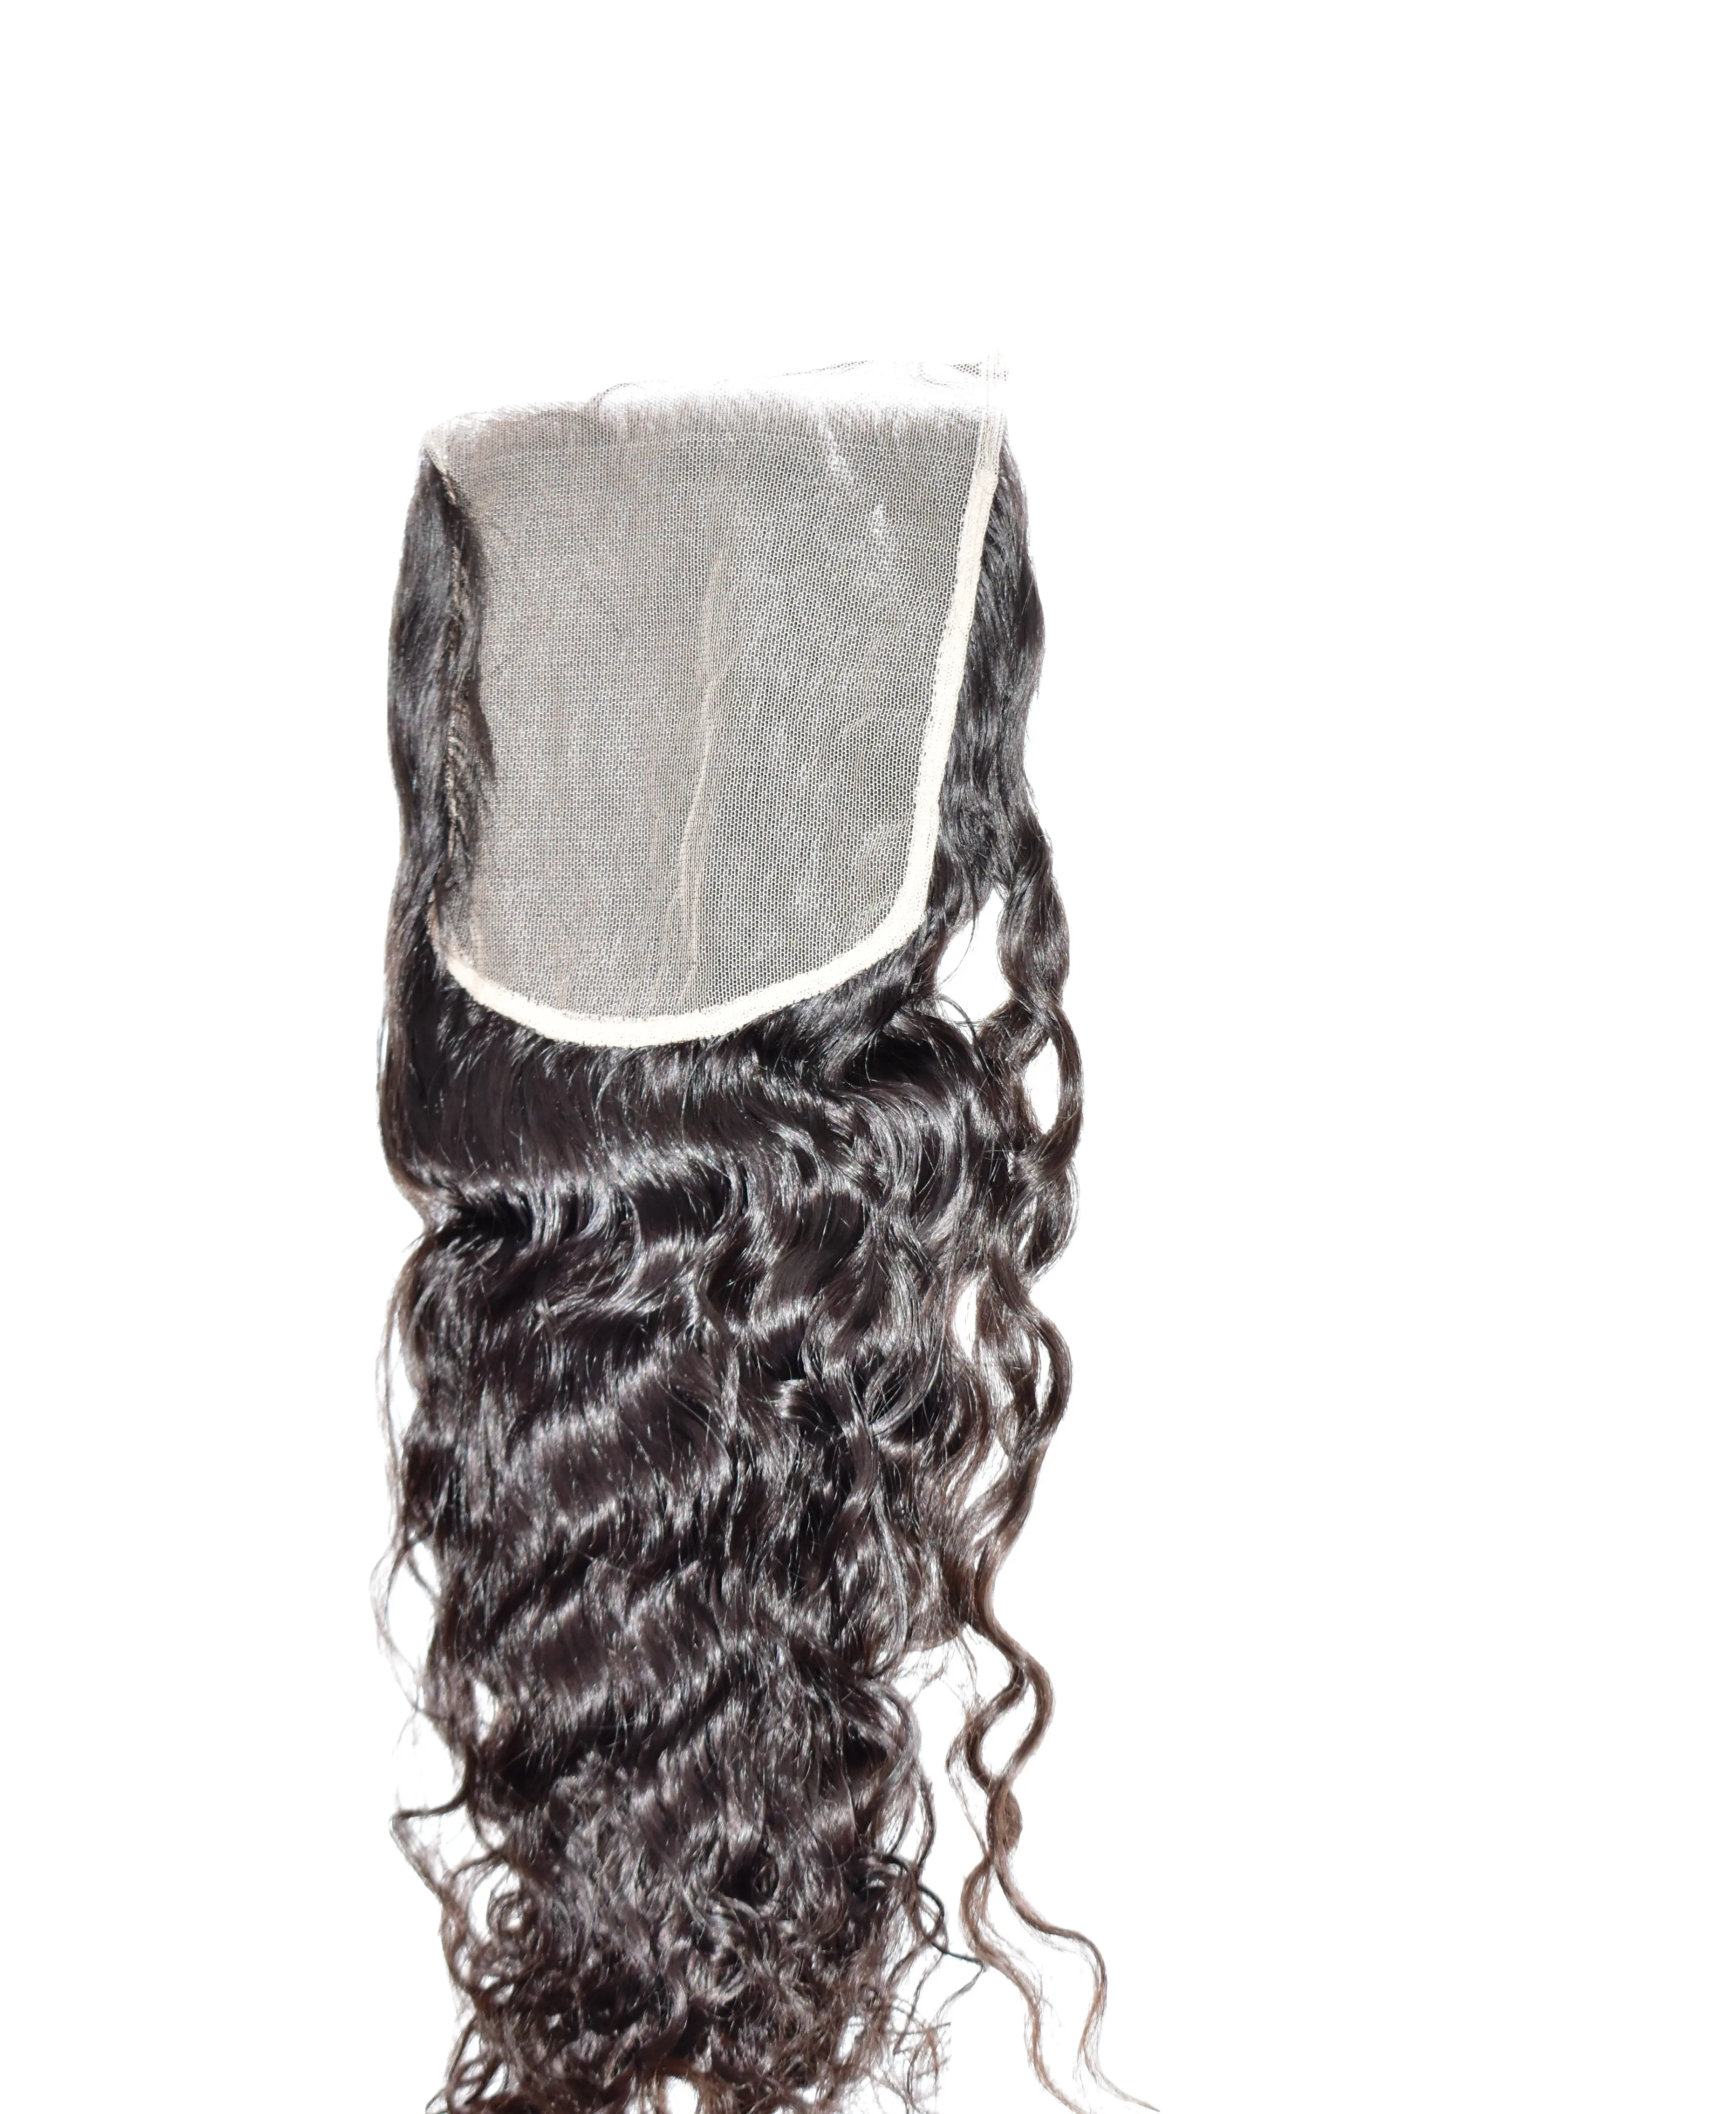 شعر طبيعي مموج ومتناسق مع البشرة للبيع بالجملة من المورد الطبيعي بمقاس 6 × 6 وبمشبك شعر بشري برازيلي من المعابد